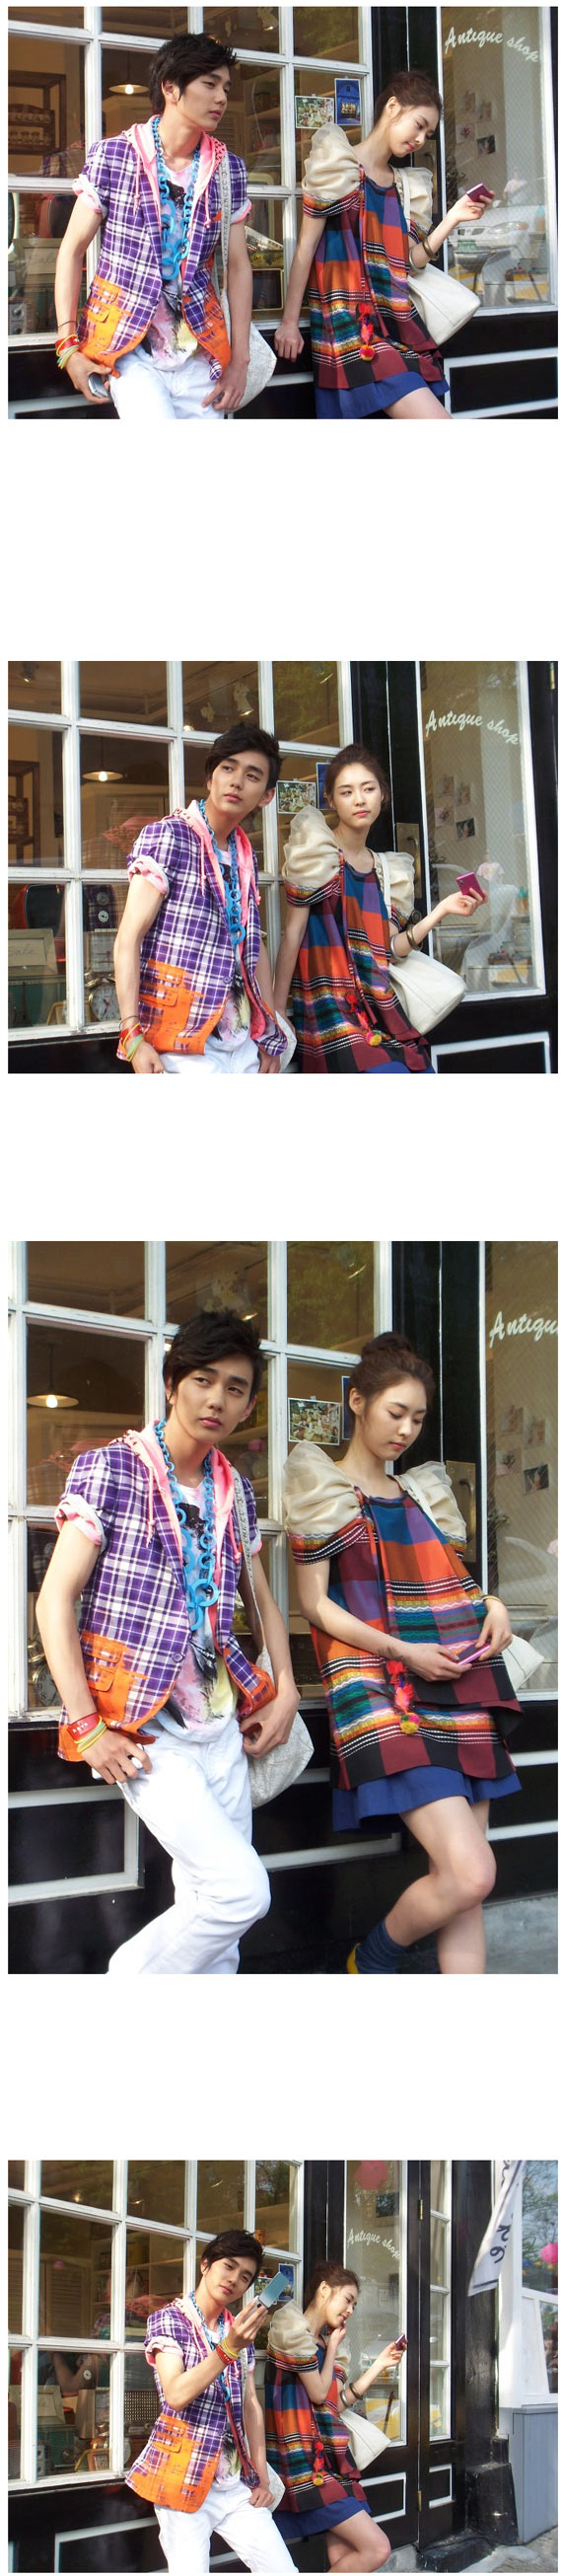 [07.05] Yoo Seung Ho & Lee Yeon Hee - un couple de couleur ! 142424